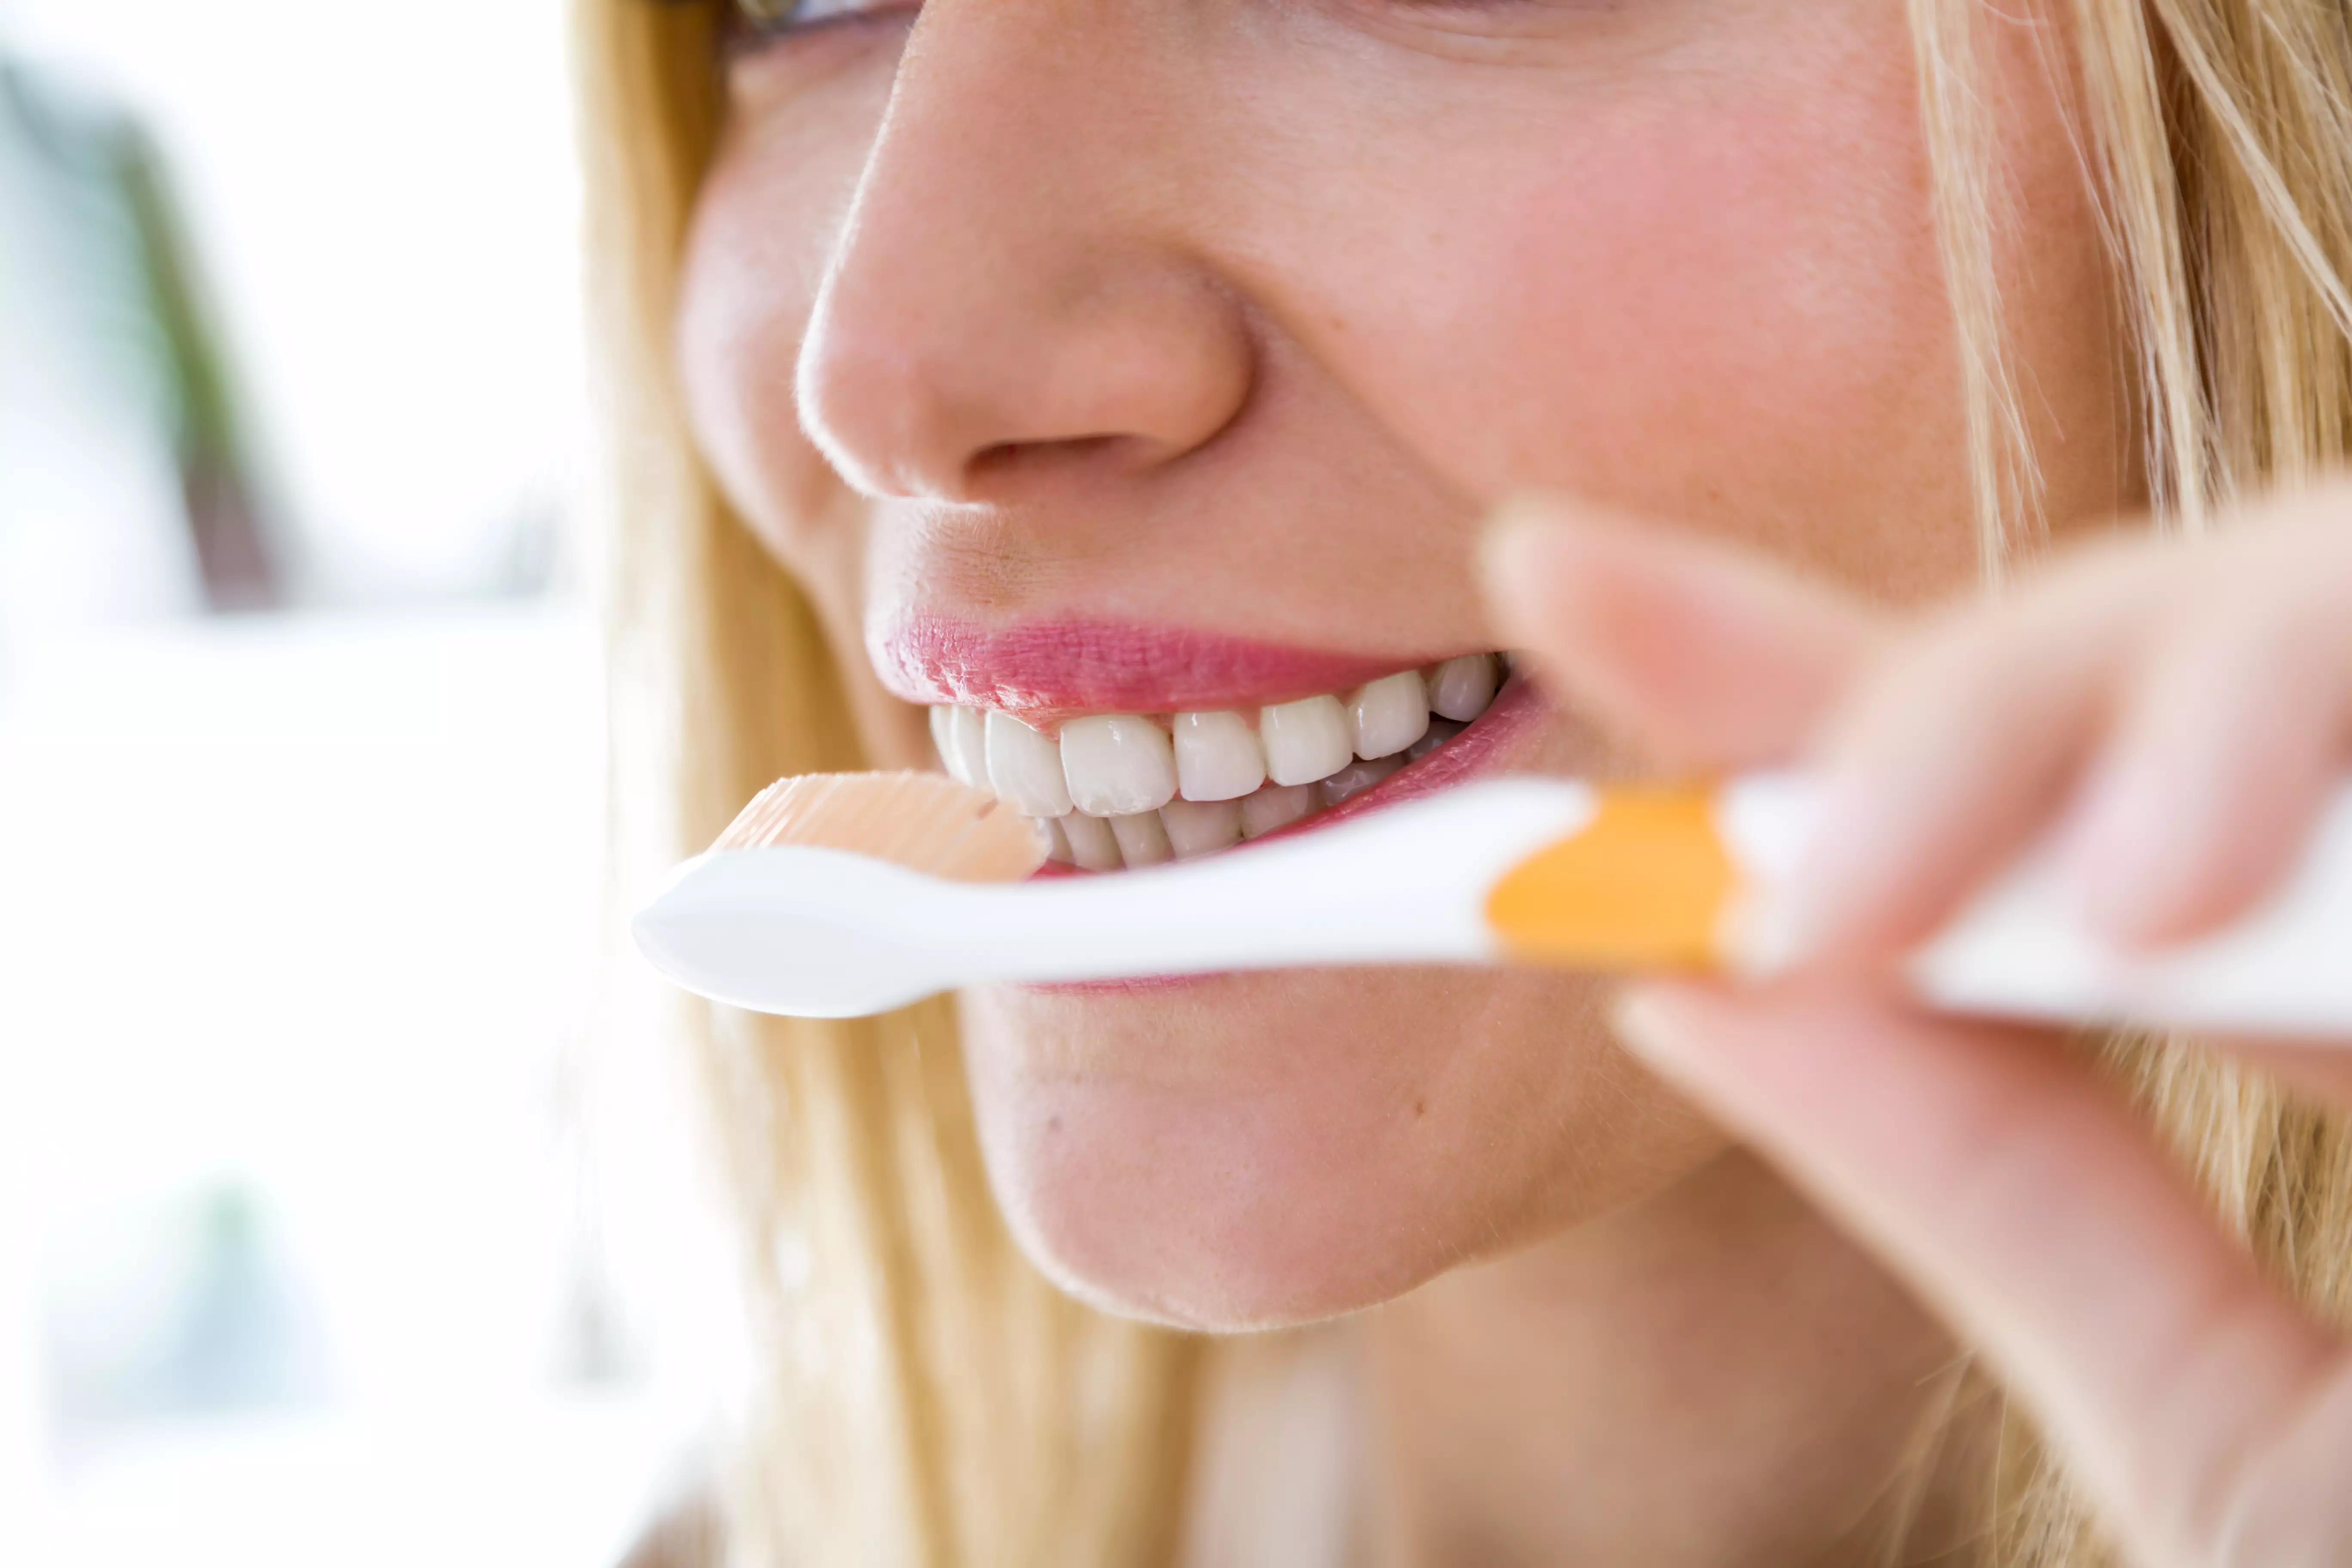 Используйте зубные щетки средней жесткости для чистки, они лучше очищают и меньше травмируют десну